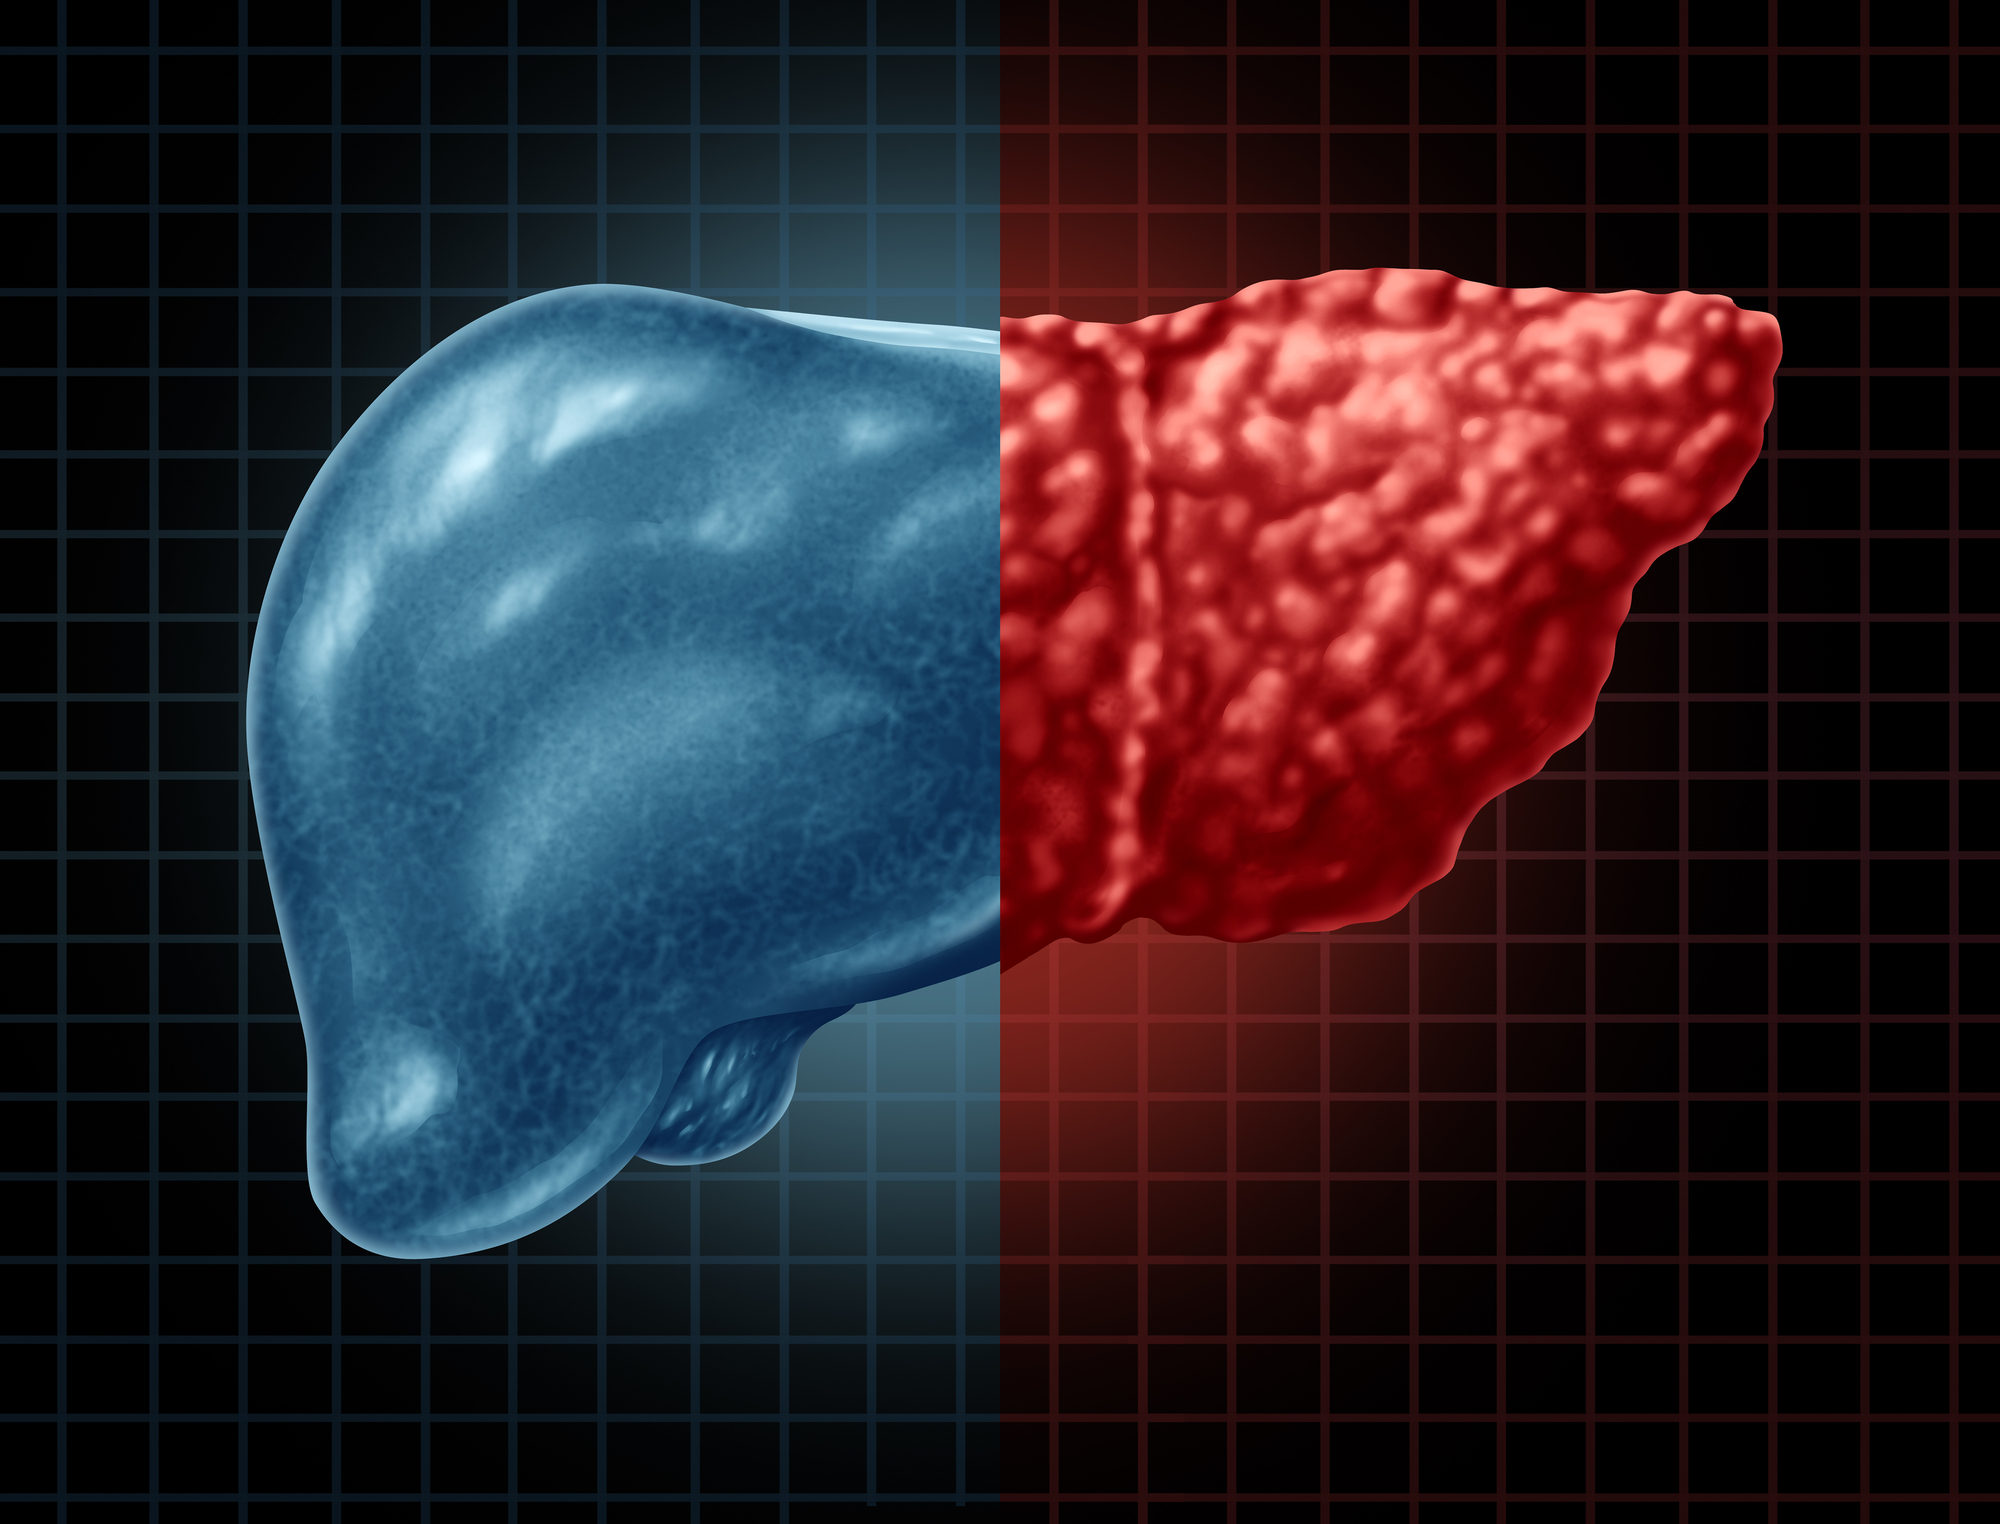 Representação de um fígado humano